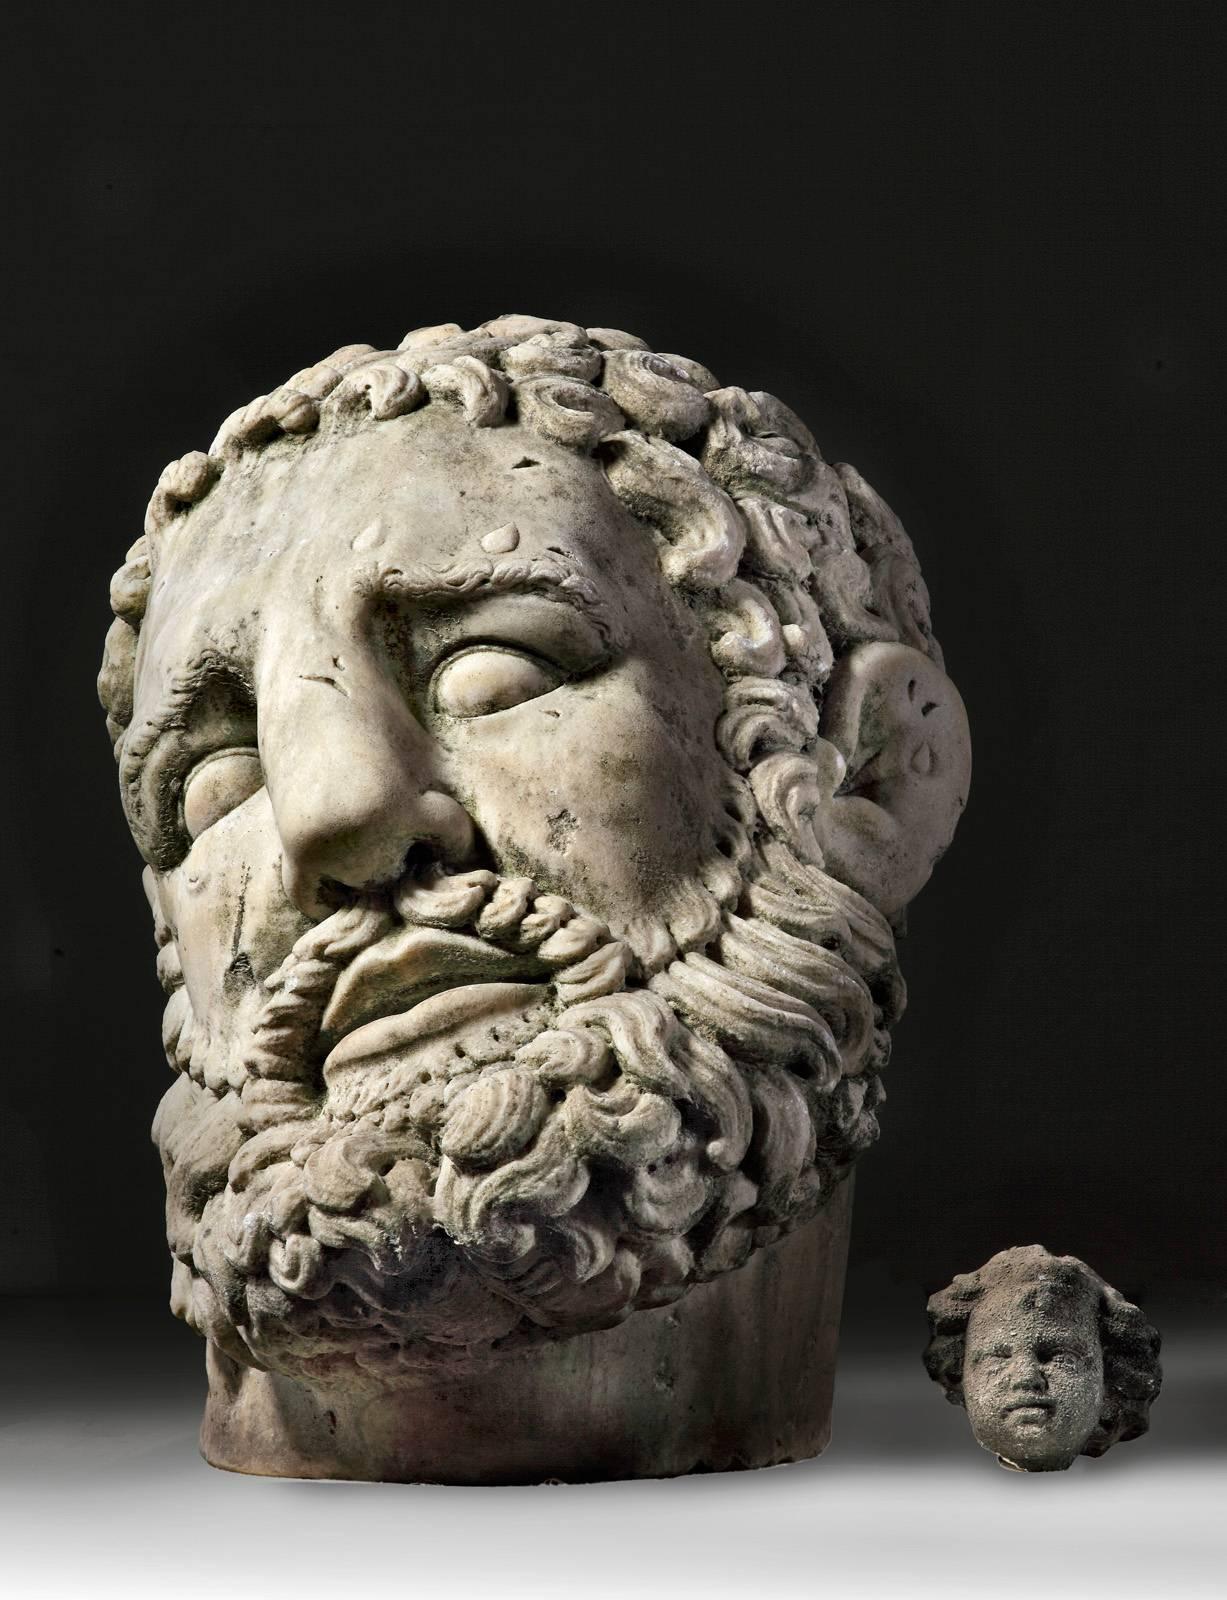 Hercule est représenté comme un homme barbu avec des gouttes de sueur sur le front.

Dans l'Antiquité, il existe de nombreux exemples de sculptures exécutées à une échelle monumentale, comme l'immense tête et le pied gauche de l'empereur